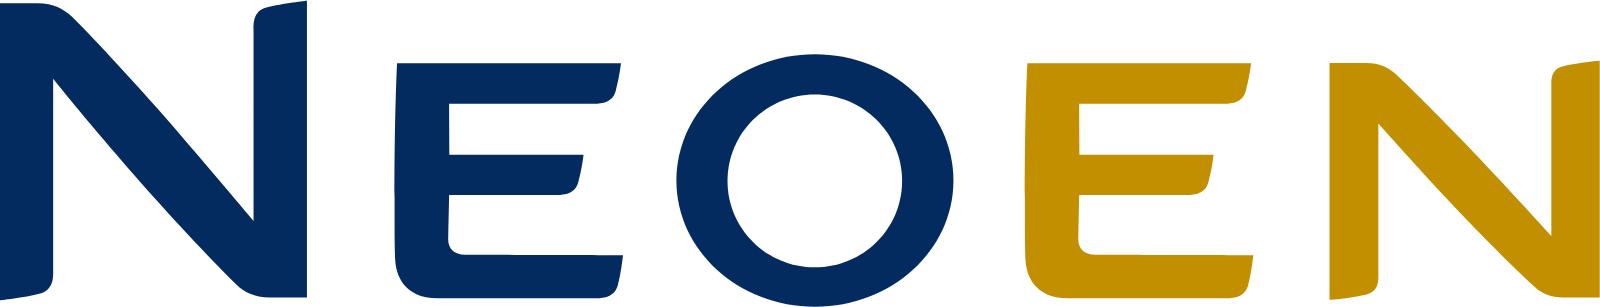 Neoen logo large (transparent PNG)